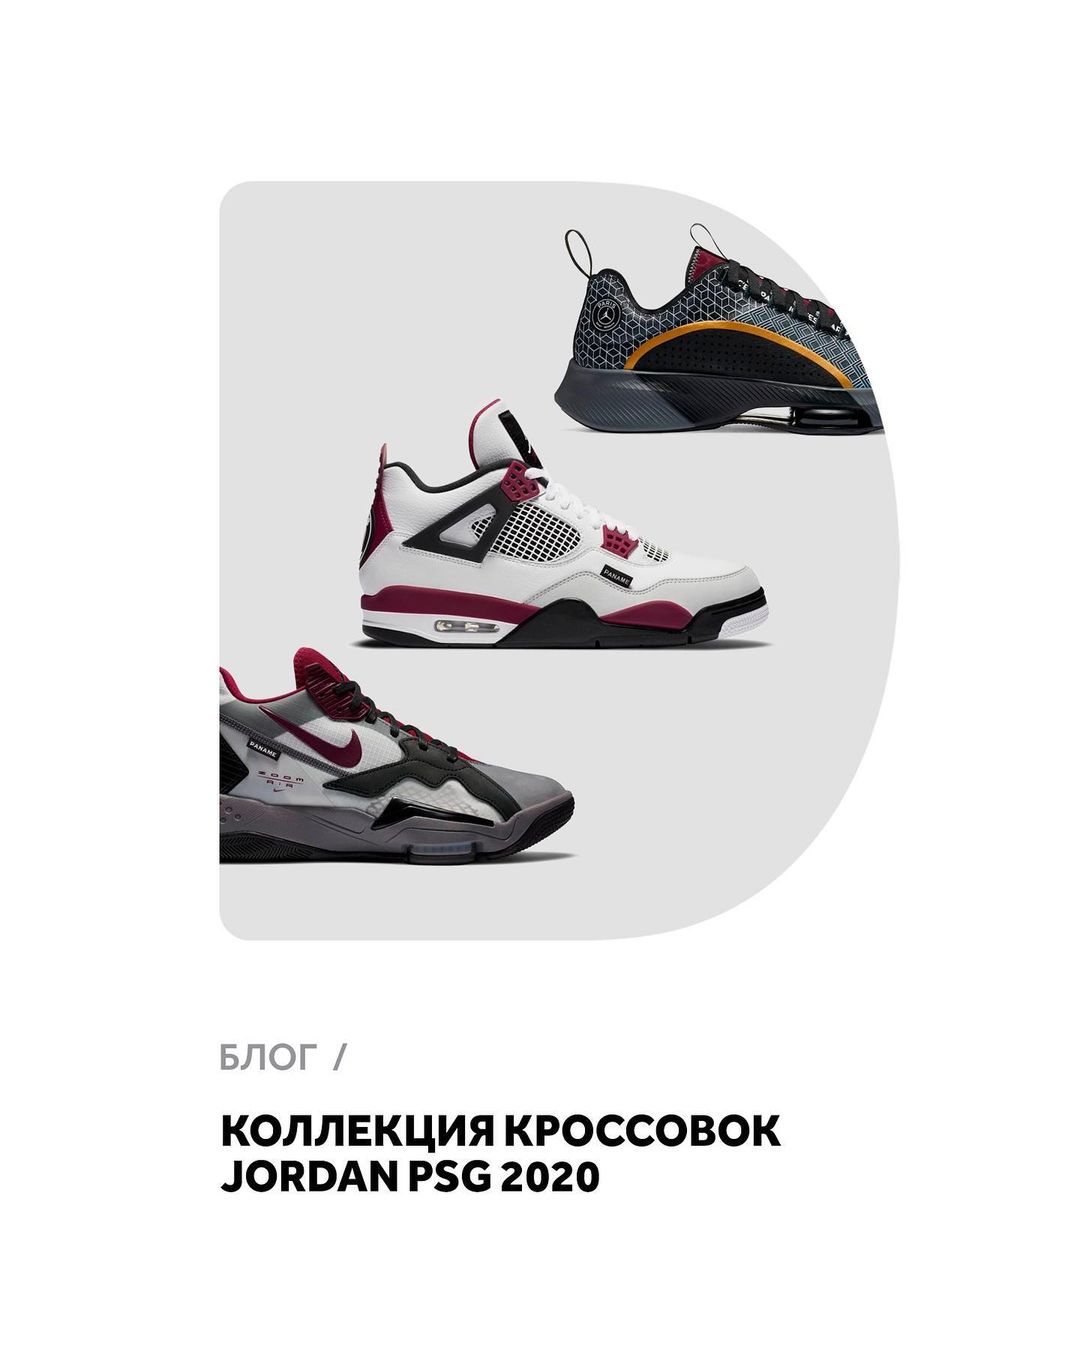 𝐅𝐔𝐍𝐊𝐘 𝐃𝐔𝐍𝐊𝐘 - В новой статье нашего блога знакомим вас с кроссовками из коллекции Jordan PSG 2020. Читайте по ссылке в Stories.
⠀
Все эти модели представлены у нас на сайте.
⠀
FUNKYDUNKY.RU / #funk...